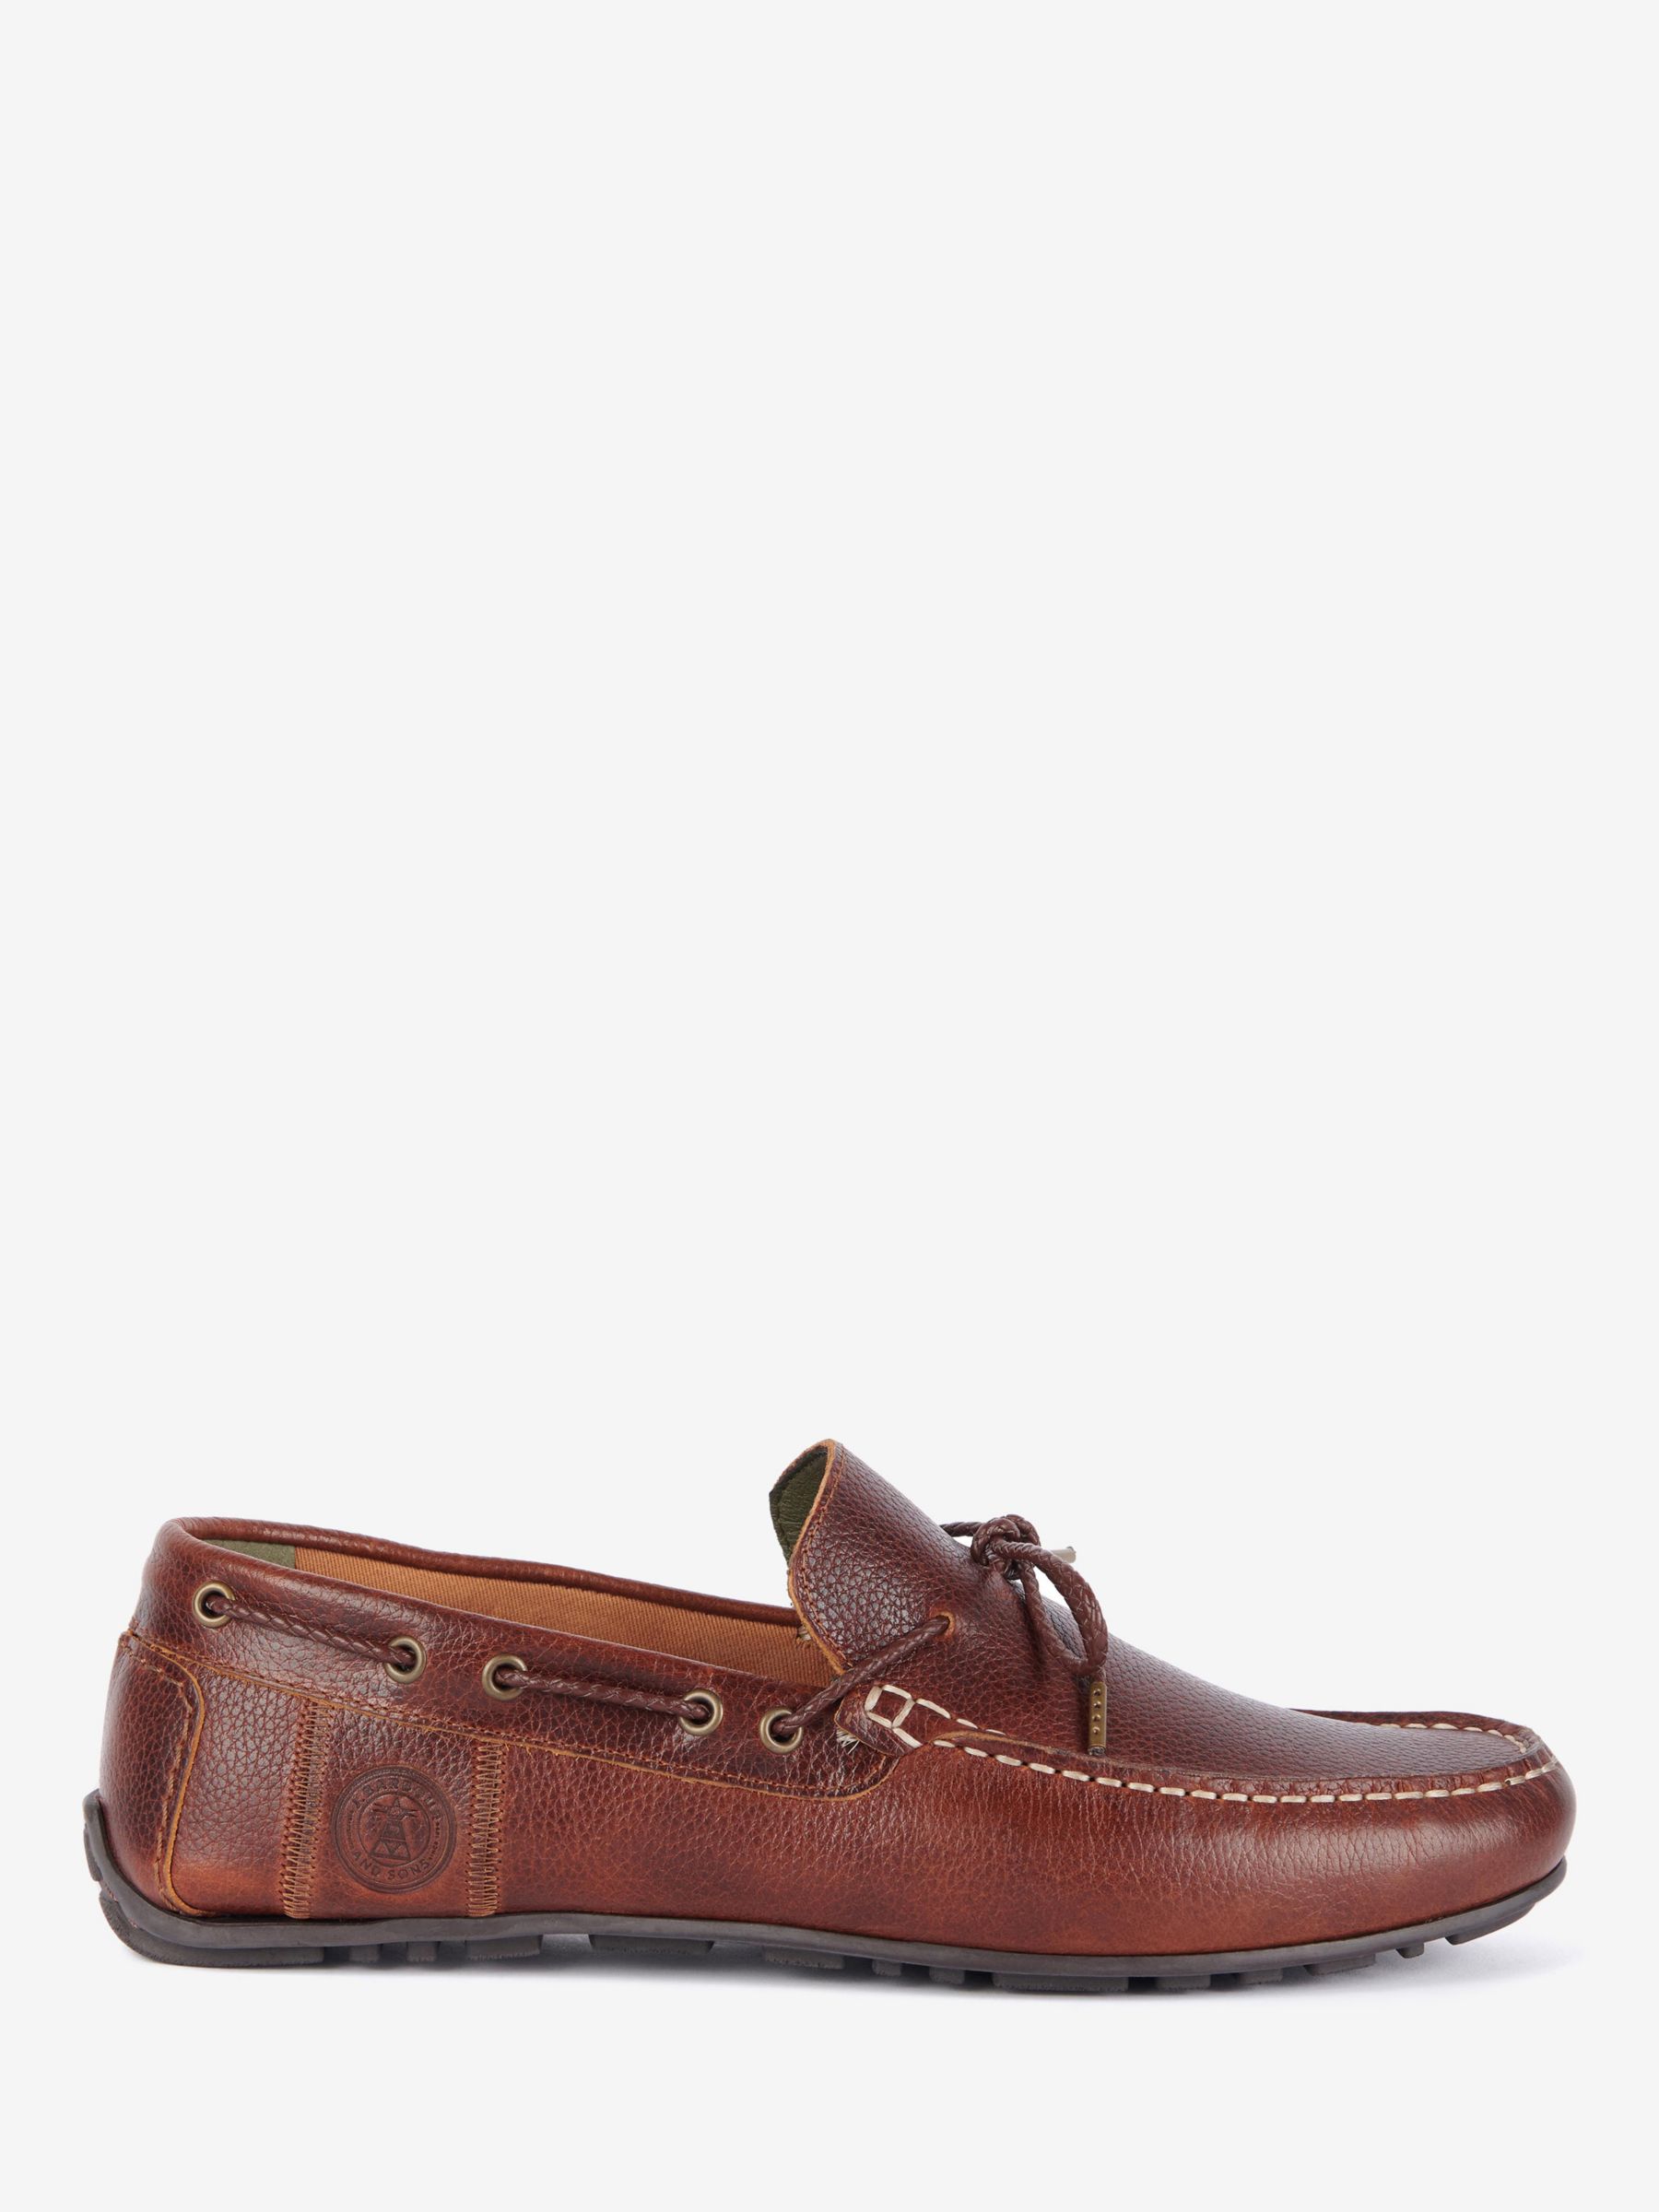 Barbour Jenson Boat Shoes, Cognac, 7